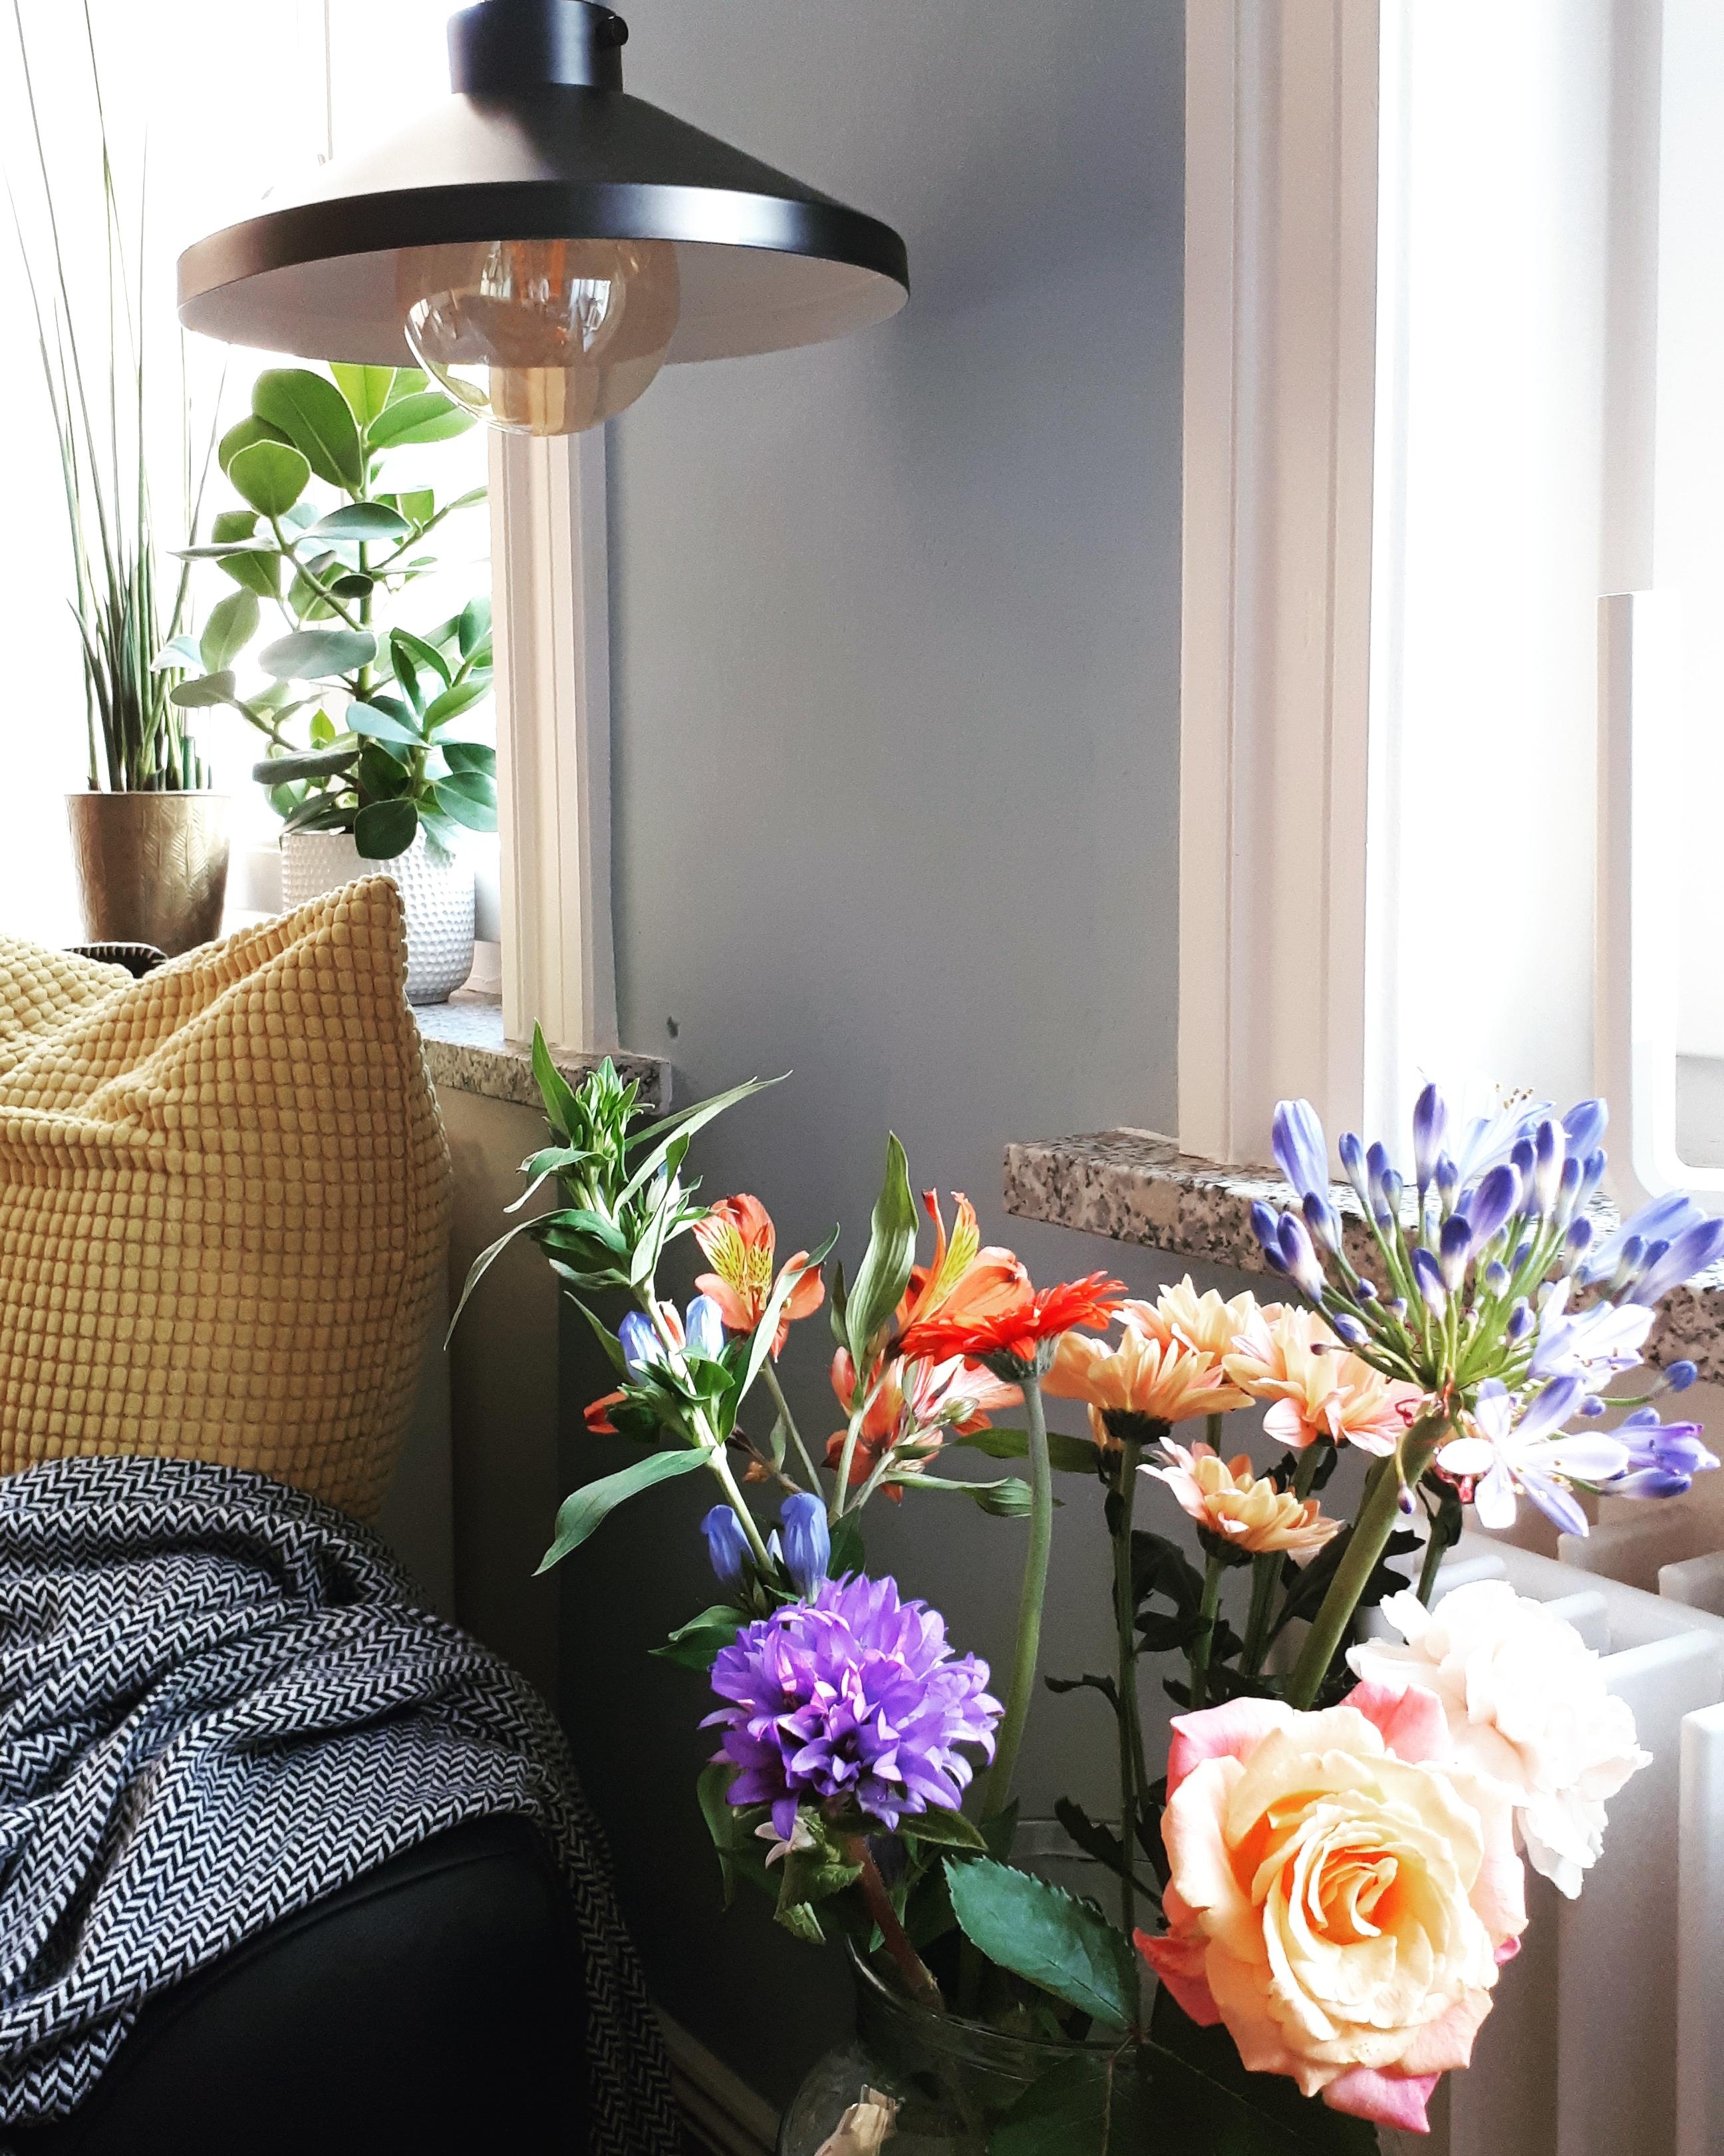 Sommerlich im Wohnzimmer! #bunt #blumen #altbau #couch #blauewand